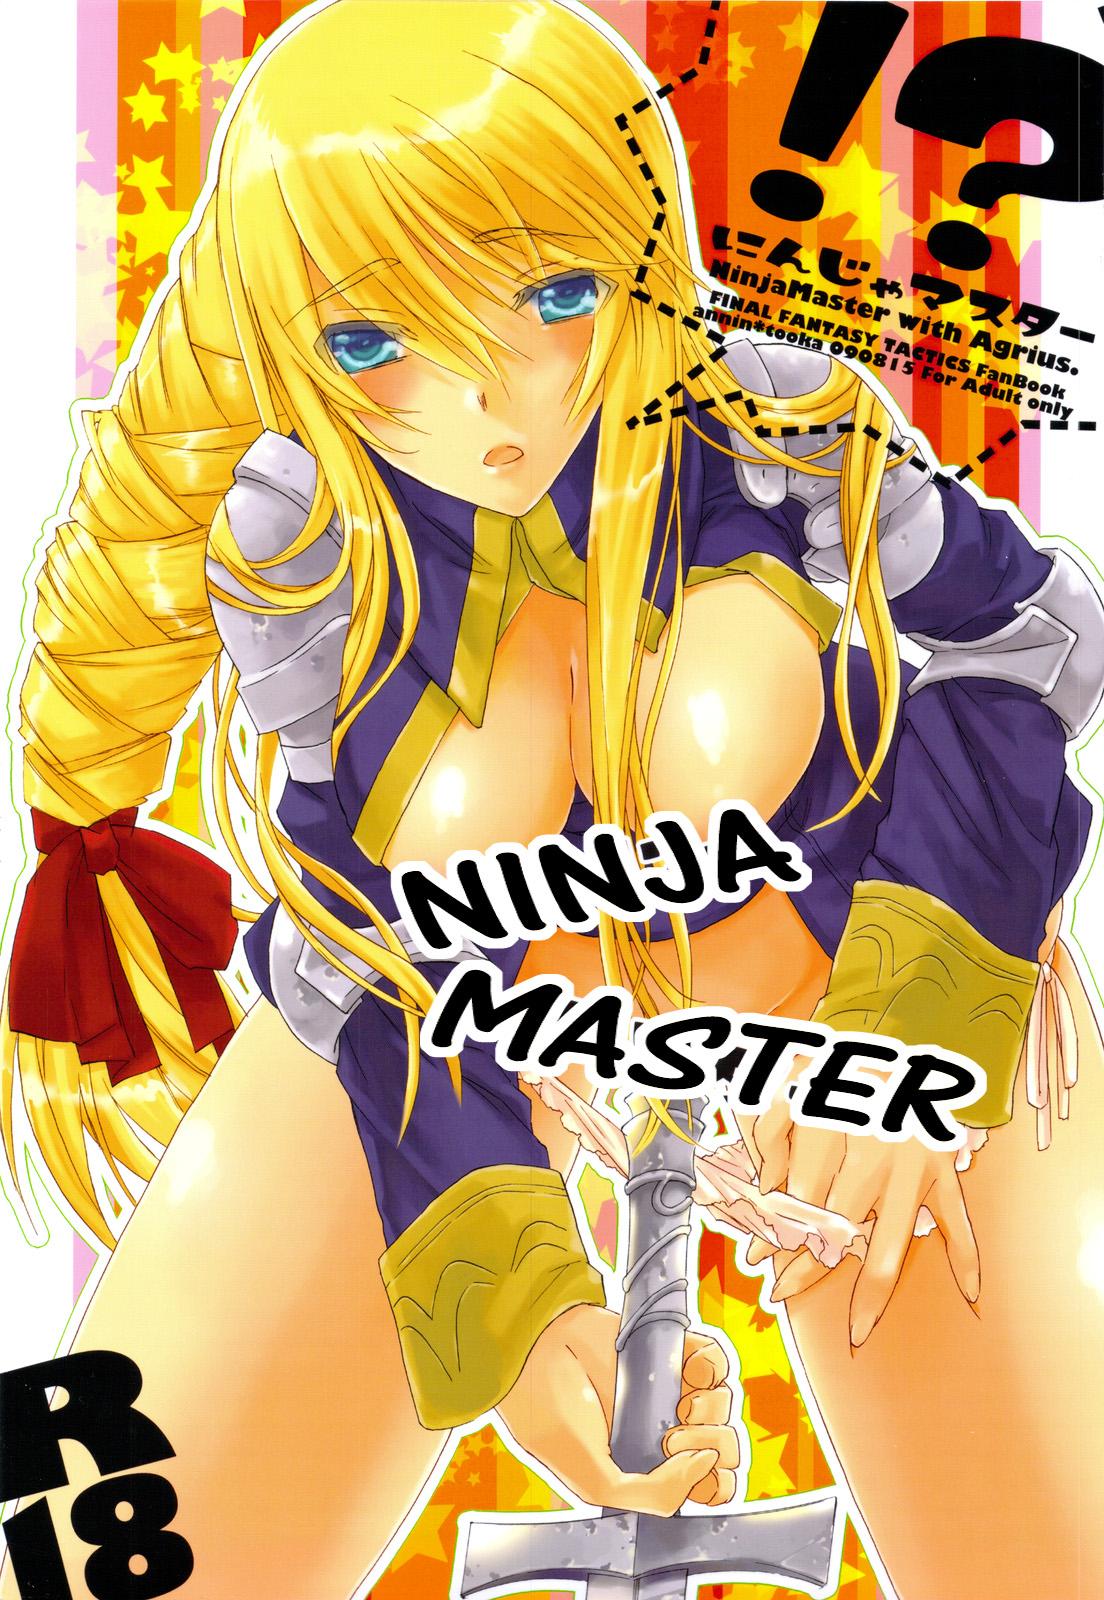 Wet Ninja Master - Final fantasy tactics Old Man - Page 1